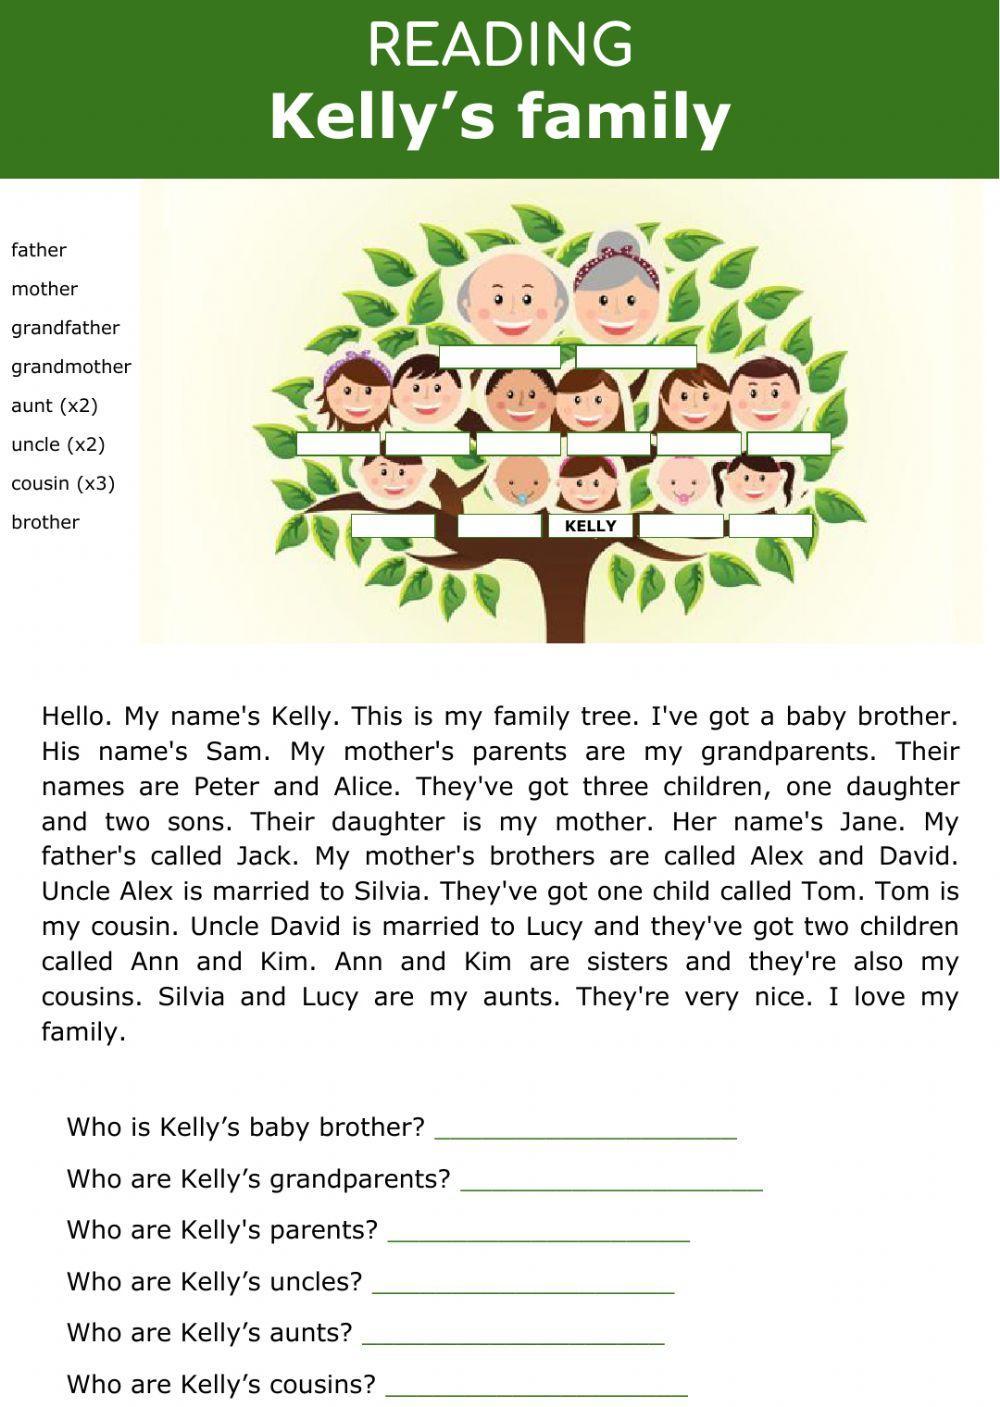 Family tree - Kelly's family